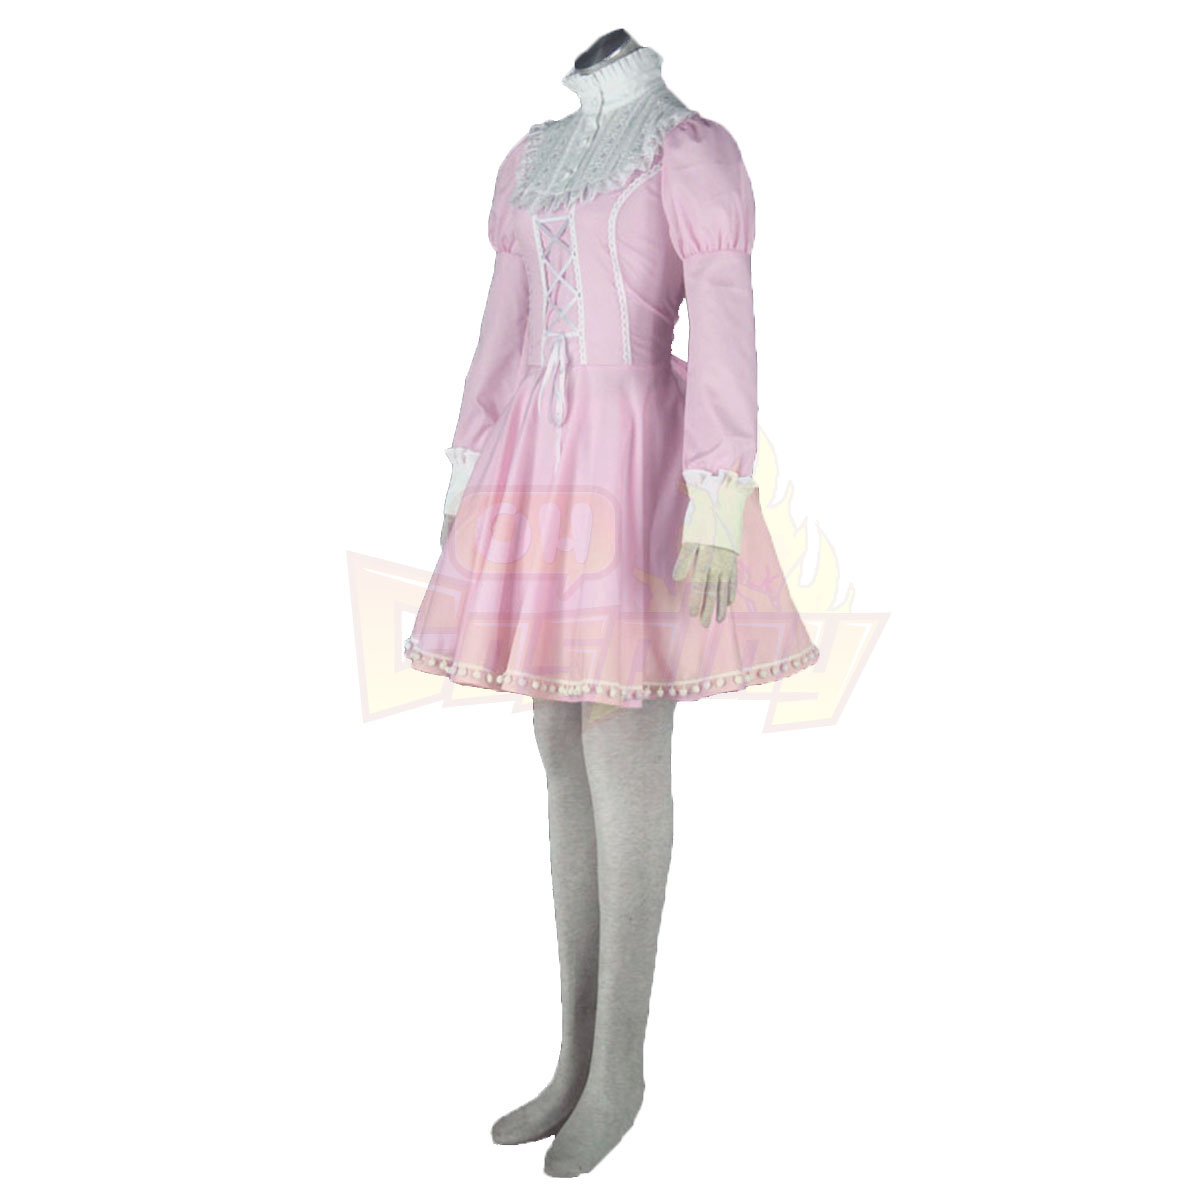 호화로운 로리타 문화 핑크 소동 짧은 드레스 코스프레 의상